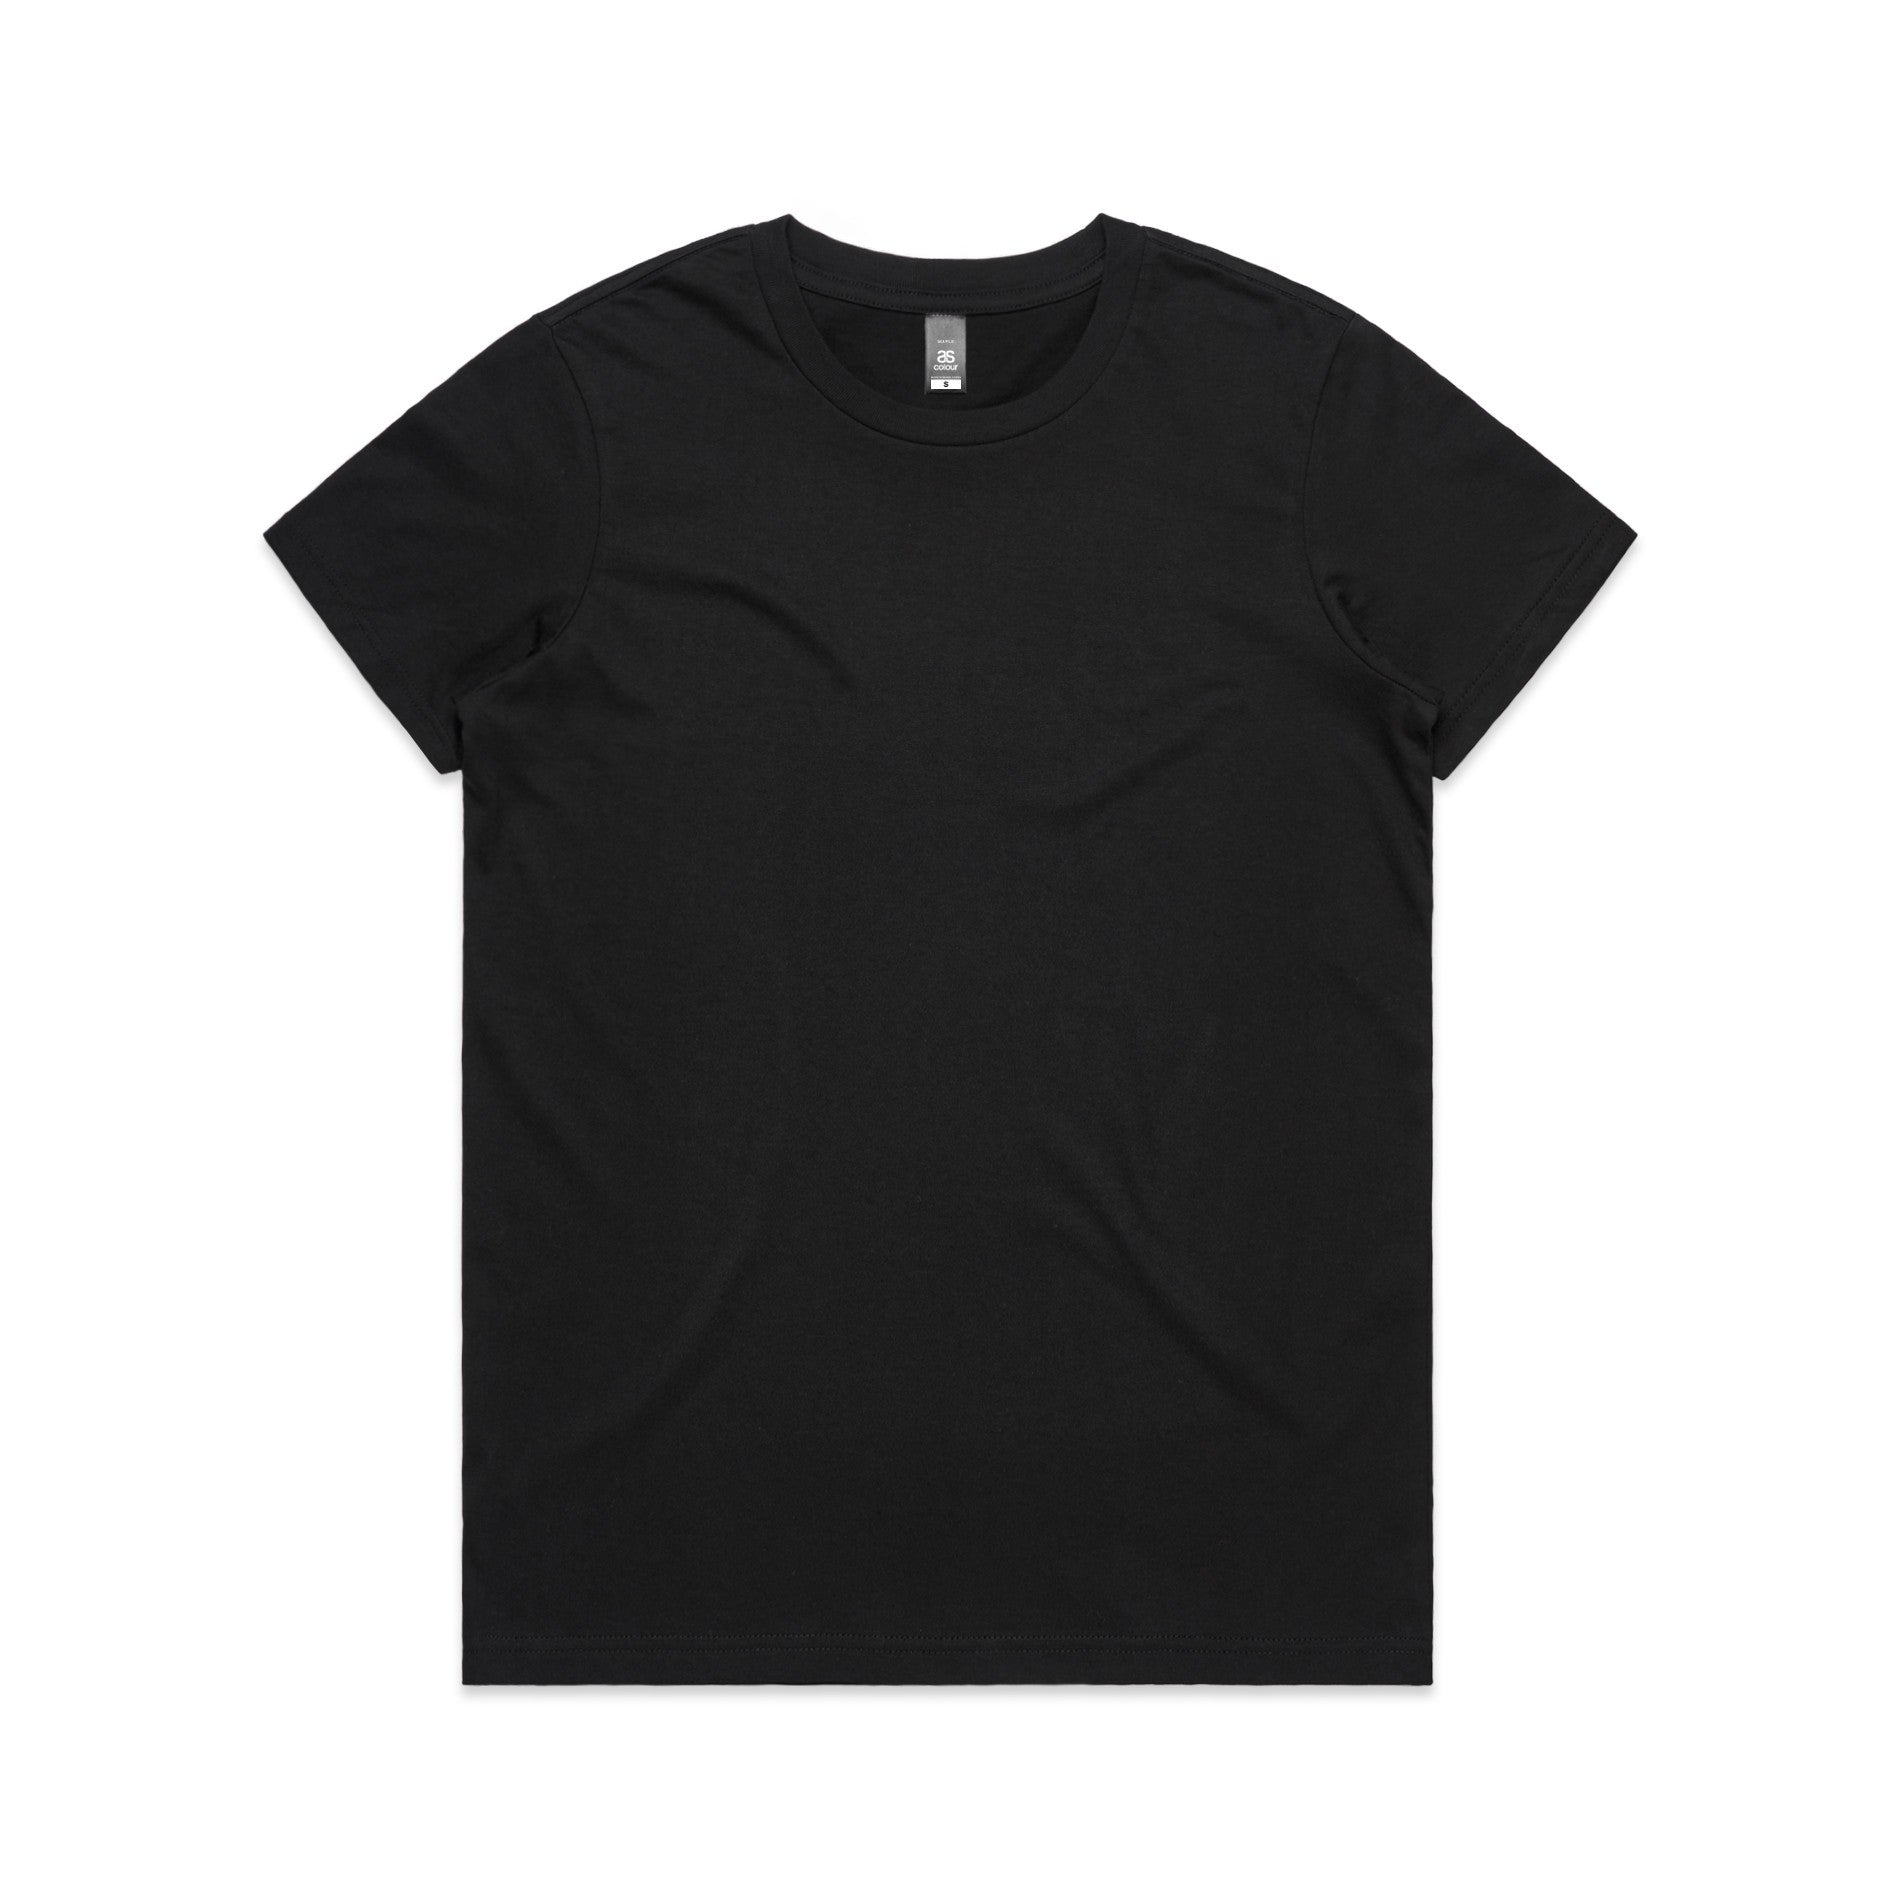 Women's Custom Printed T-Shirt